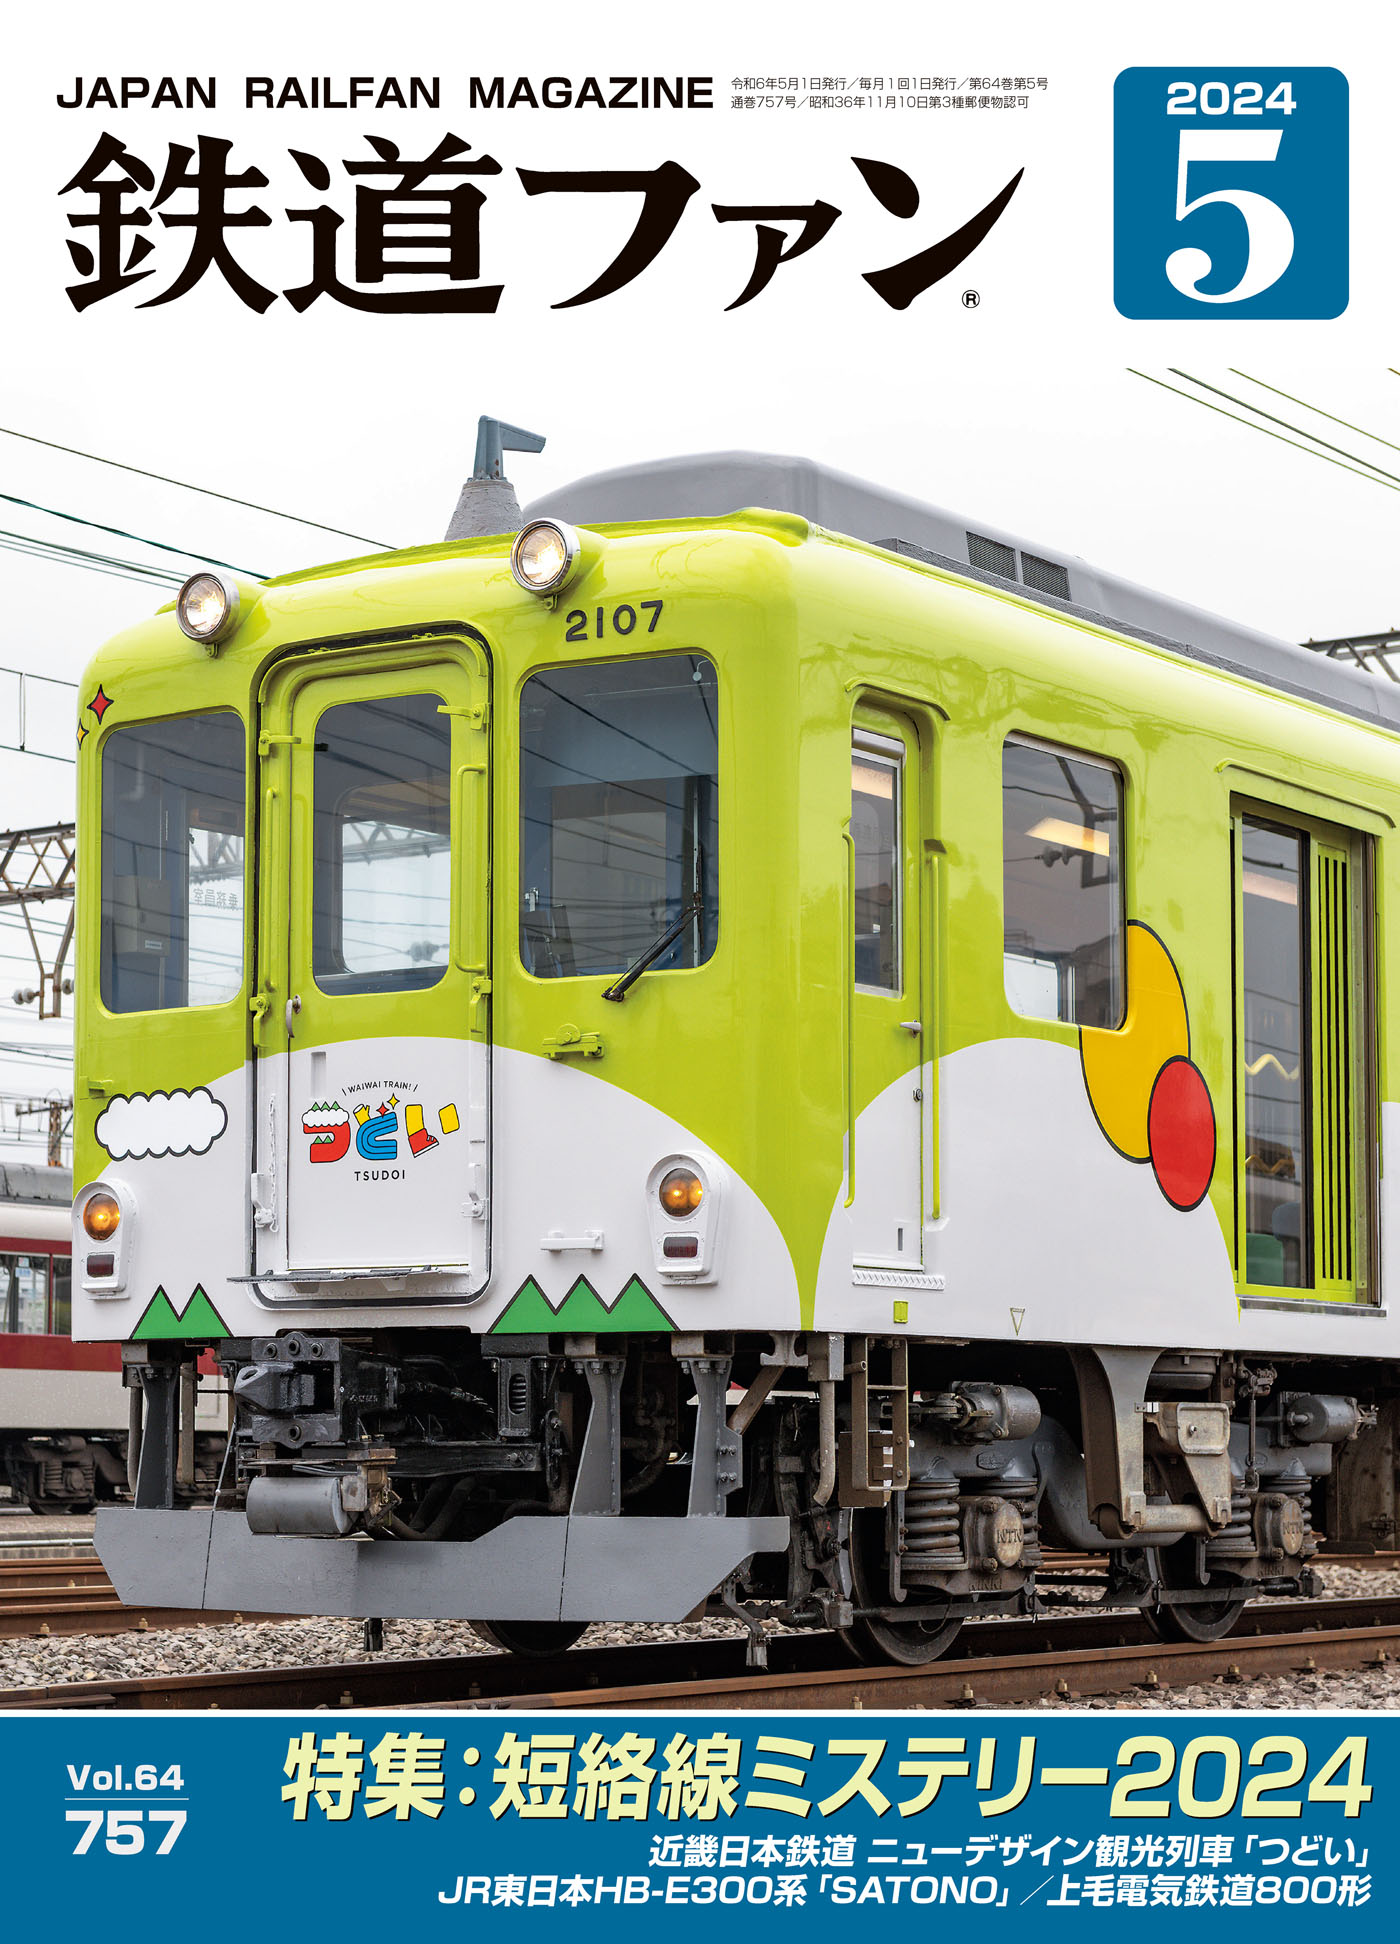 0系新幹線電車21形 国産鉄道コレクションの創刊号付録 - 鉄道模型